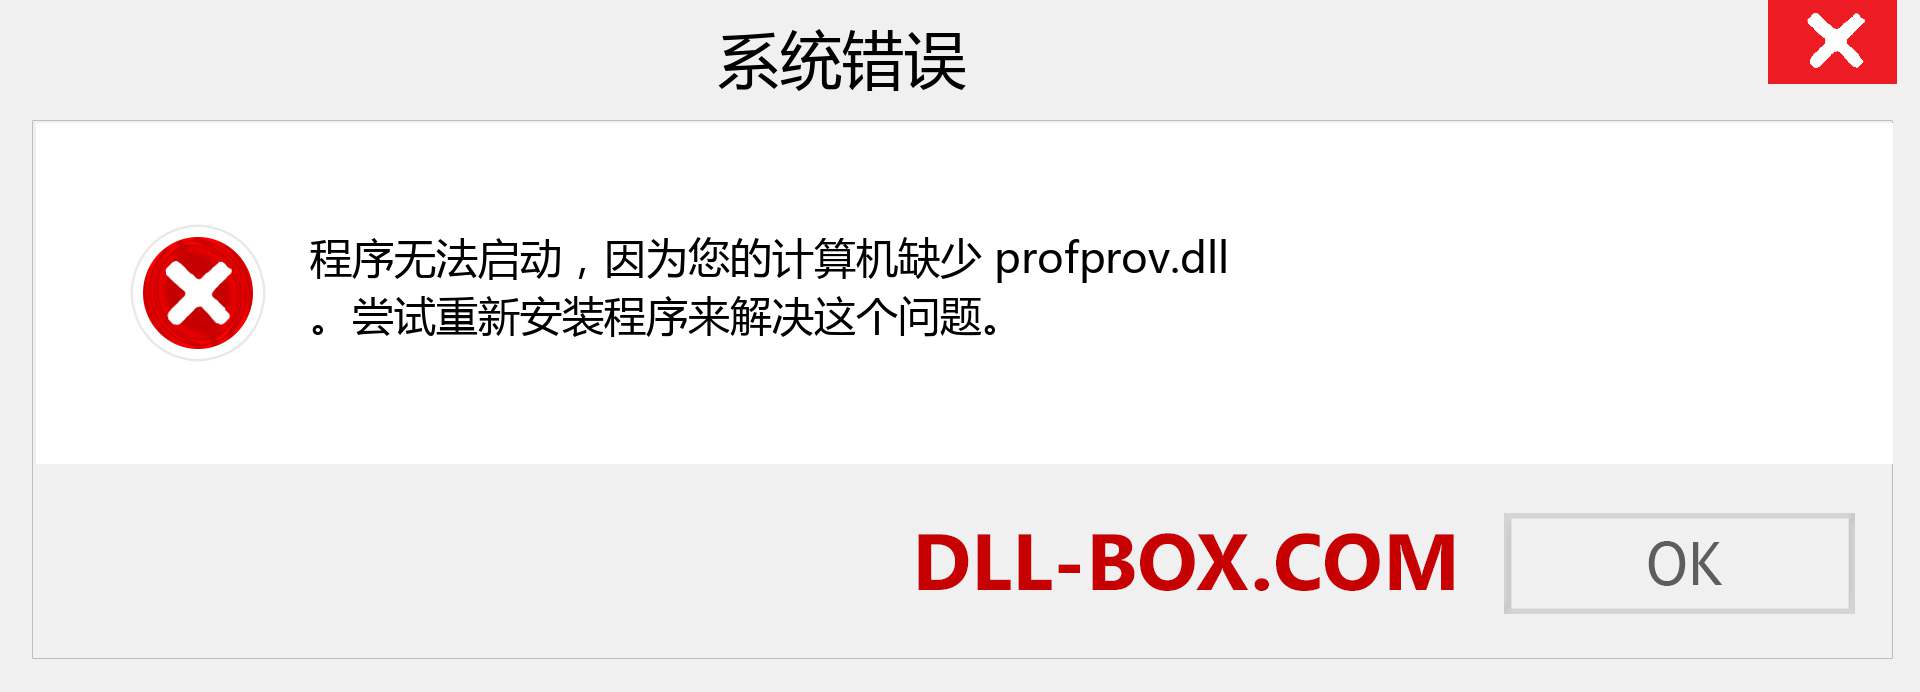 profprov.dll 文件丢失？。 适用于 Windows 7、8、10 的下载 - 修复 Windows、照片、图像上的 profprov dll 丢失错误